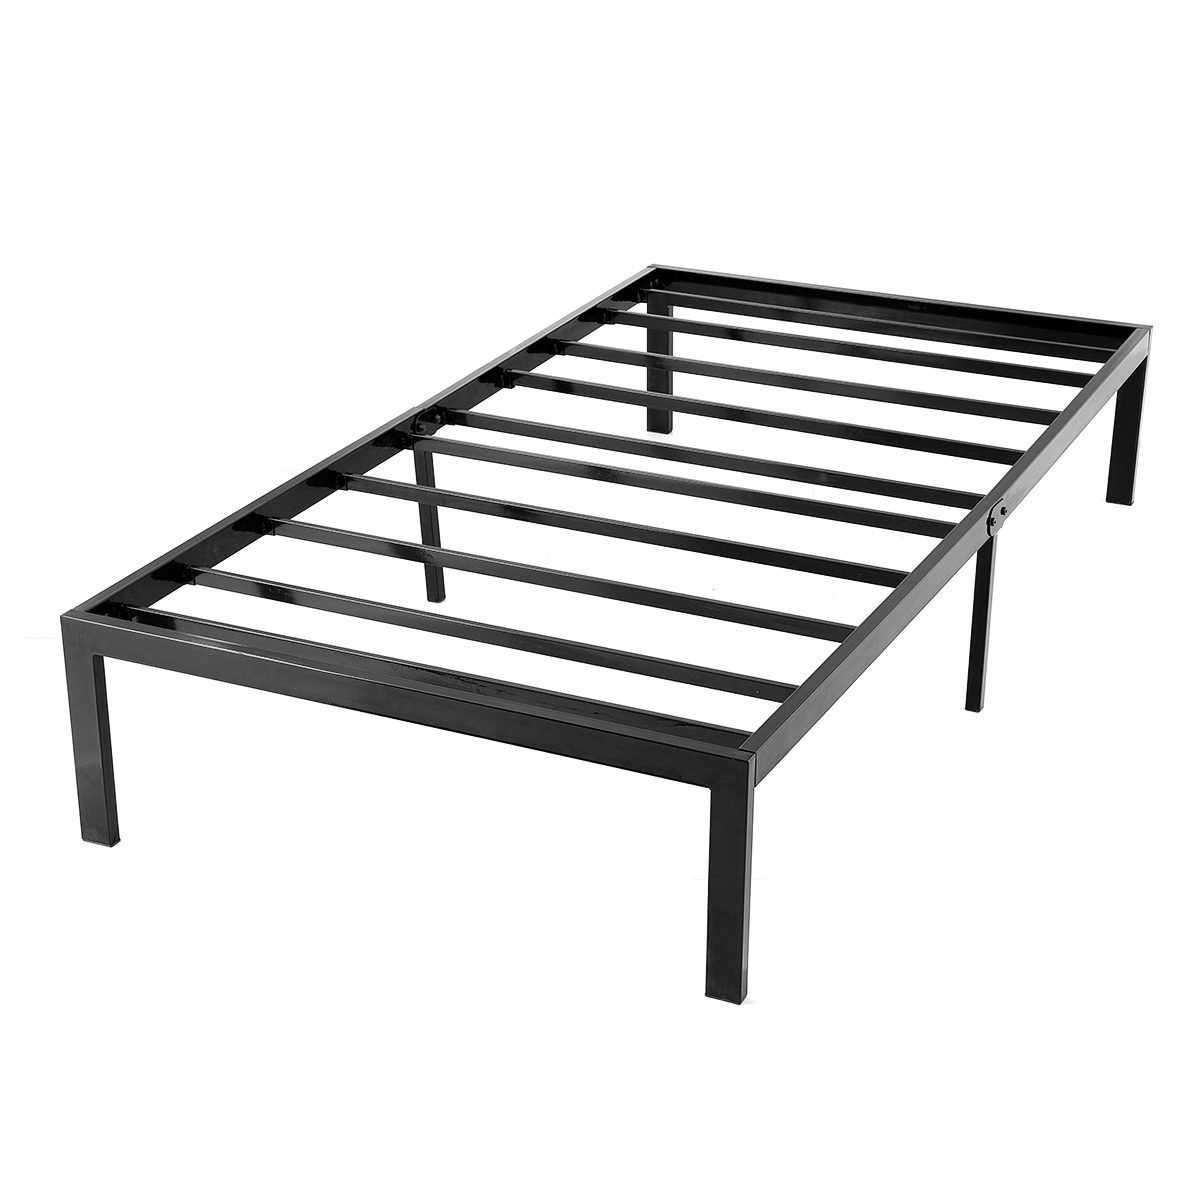 Metal Platform Bed Frame With Storage, Furniture Twin Bed Frames